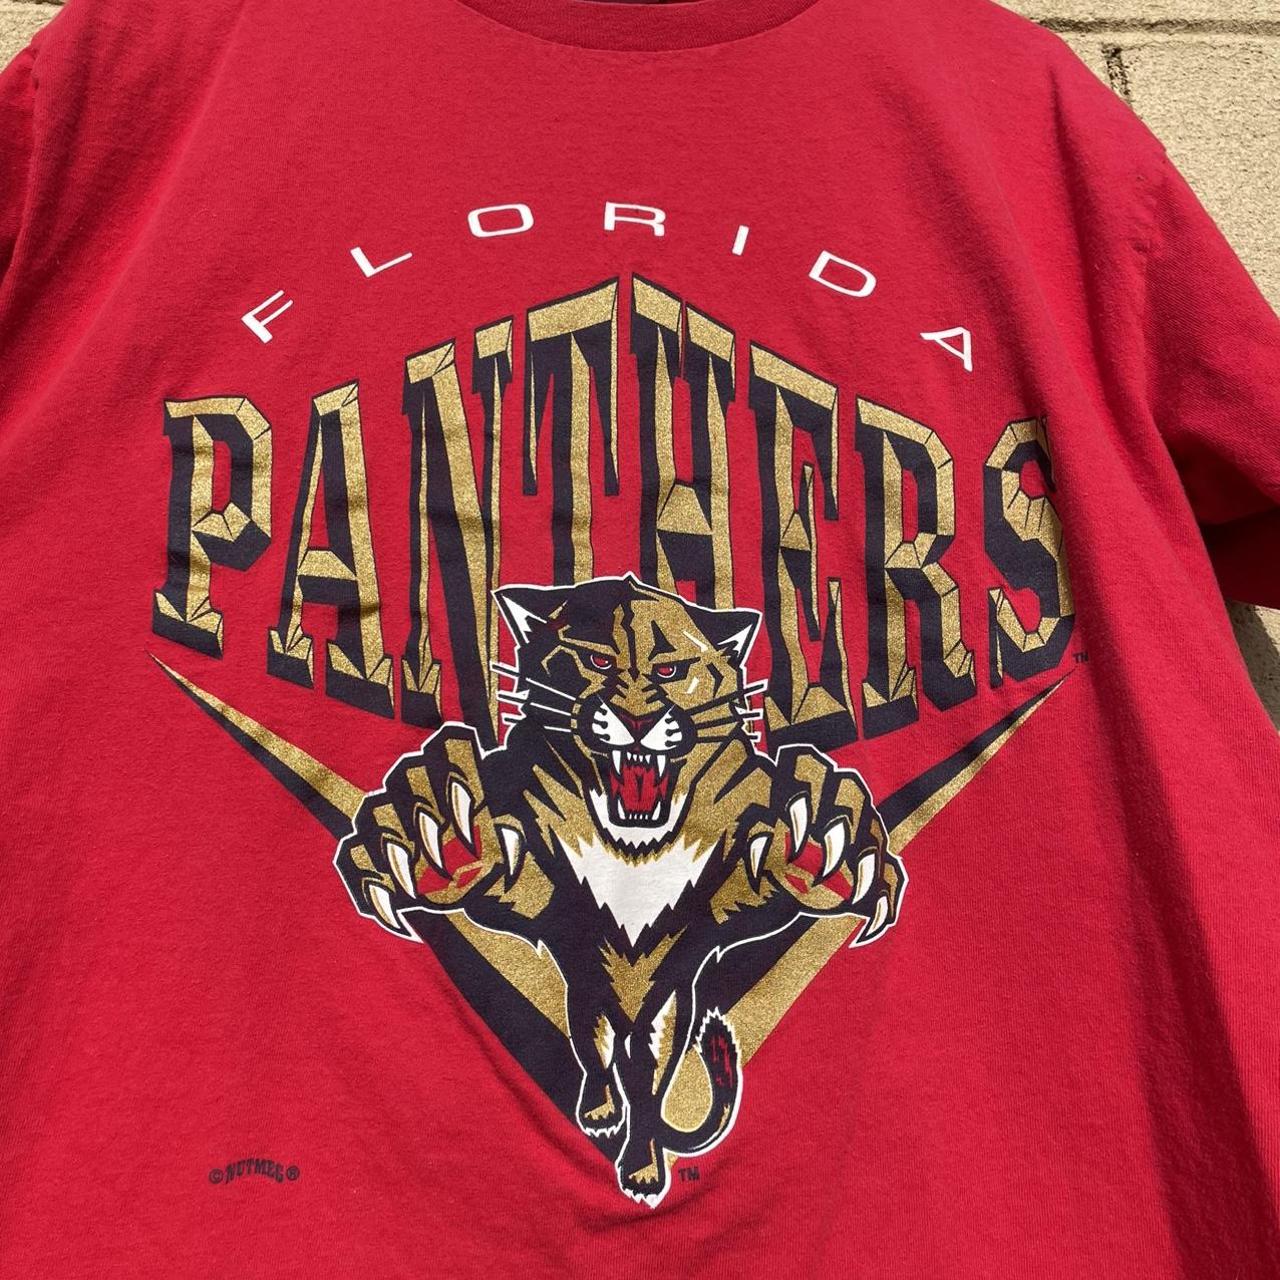 Vintage 1990s Nutmeg Florida Panthers NHL t-shirt. - Depop